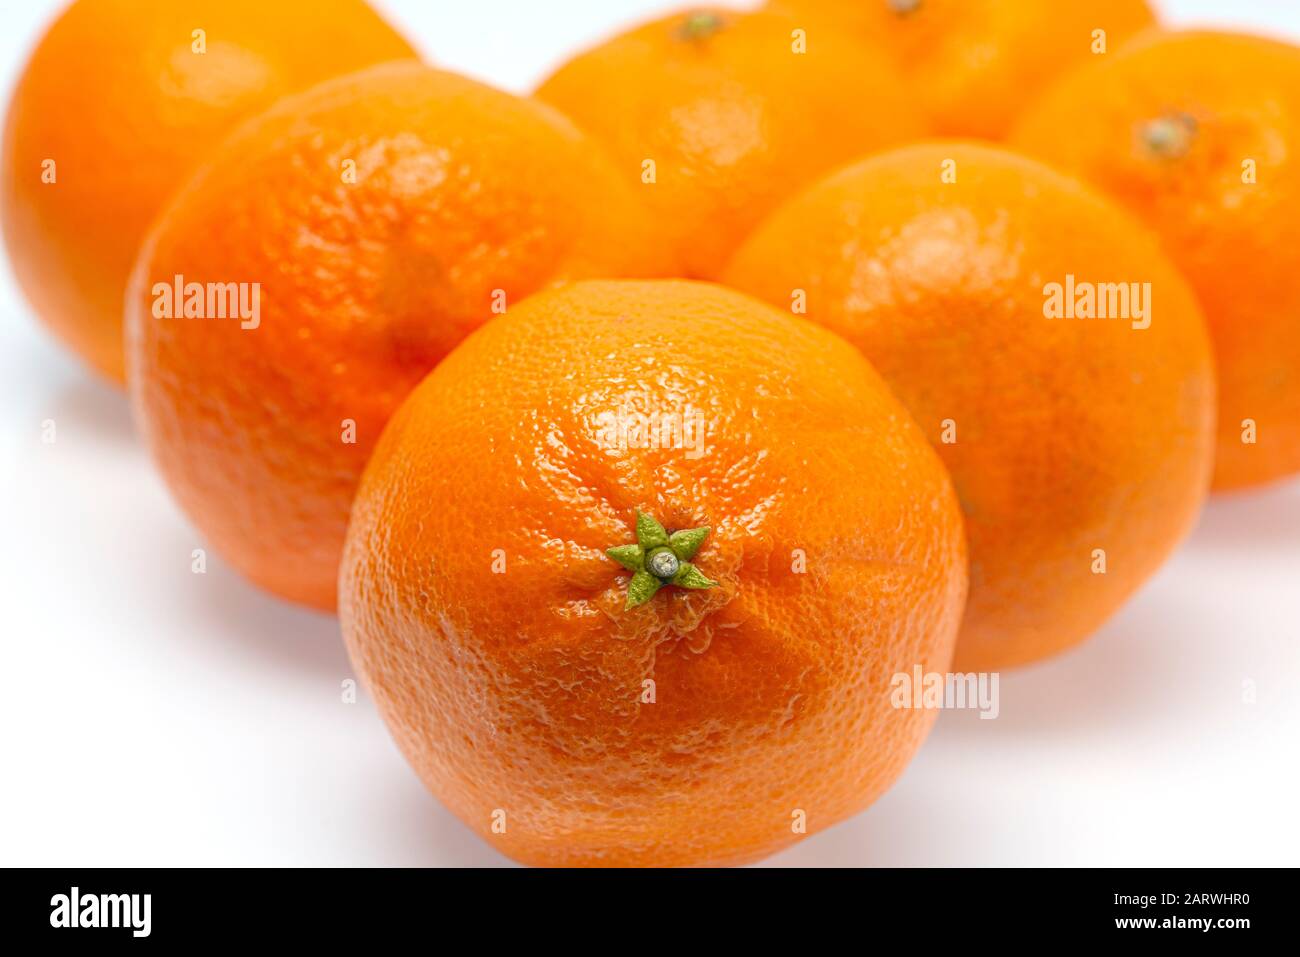 Horizontaler Nahschuss von sieben Tangerinen. Der vordere steht im Fokus, der Rest ist jedoch nicht im Fokus. Weißer Hintergrund. Kopierbereich. Stockfoto